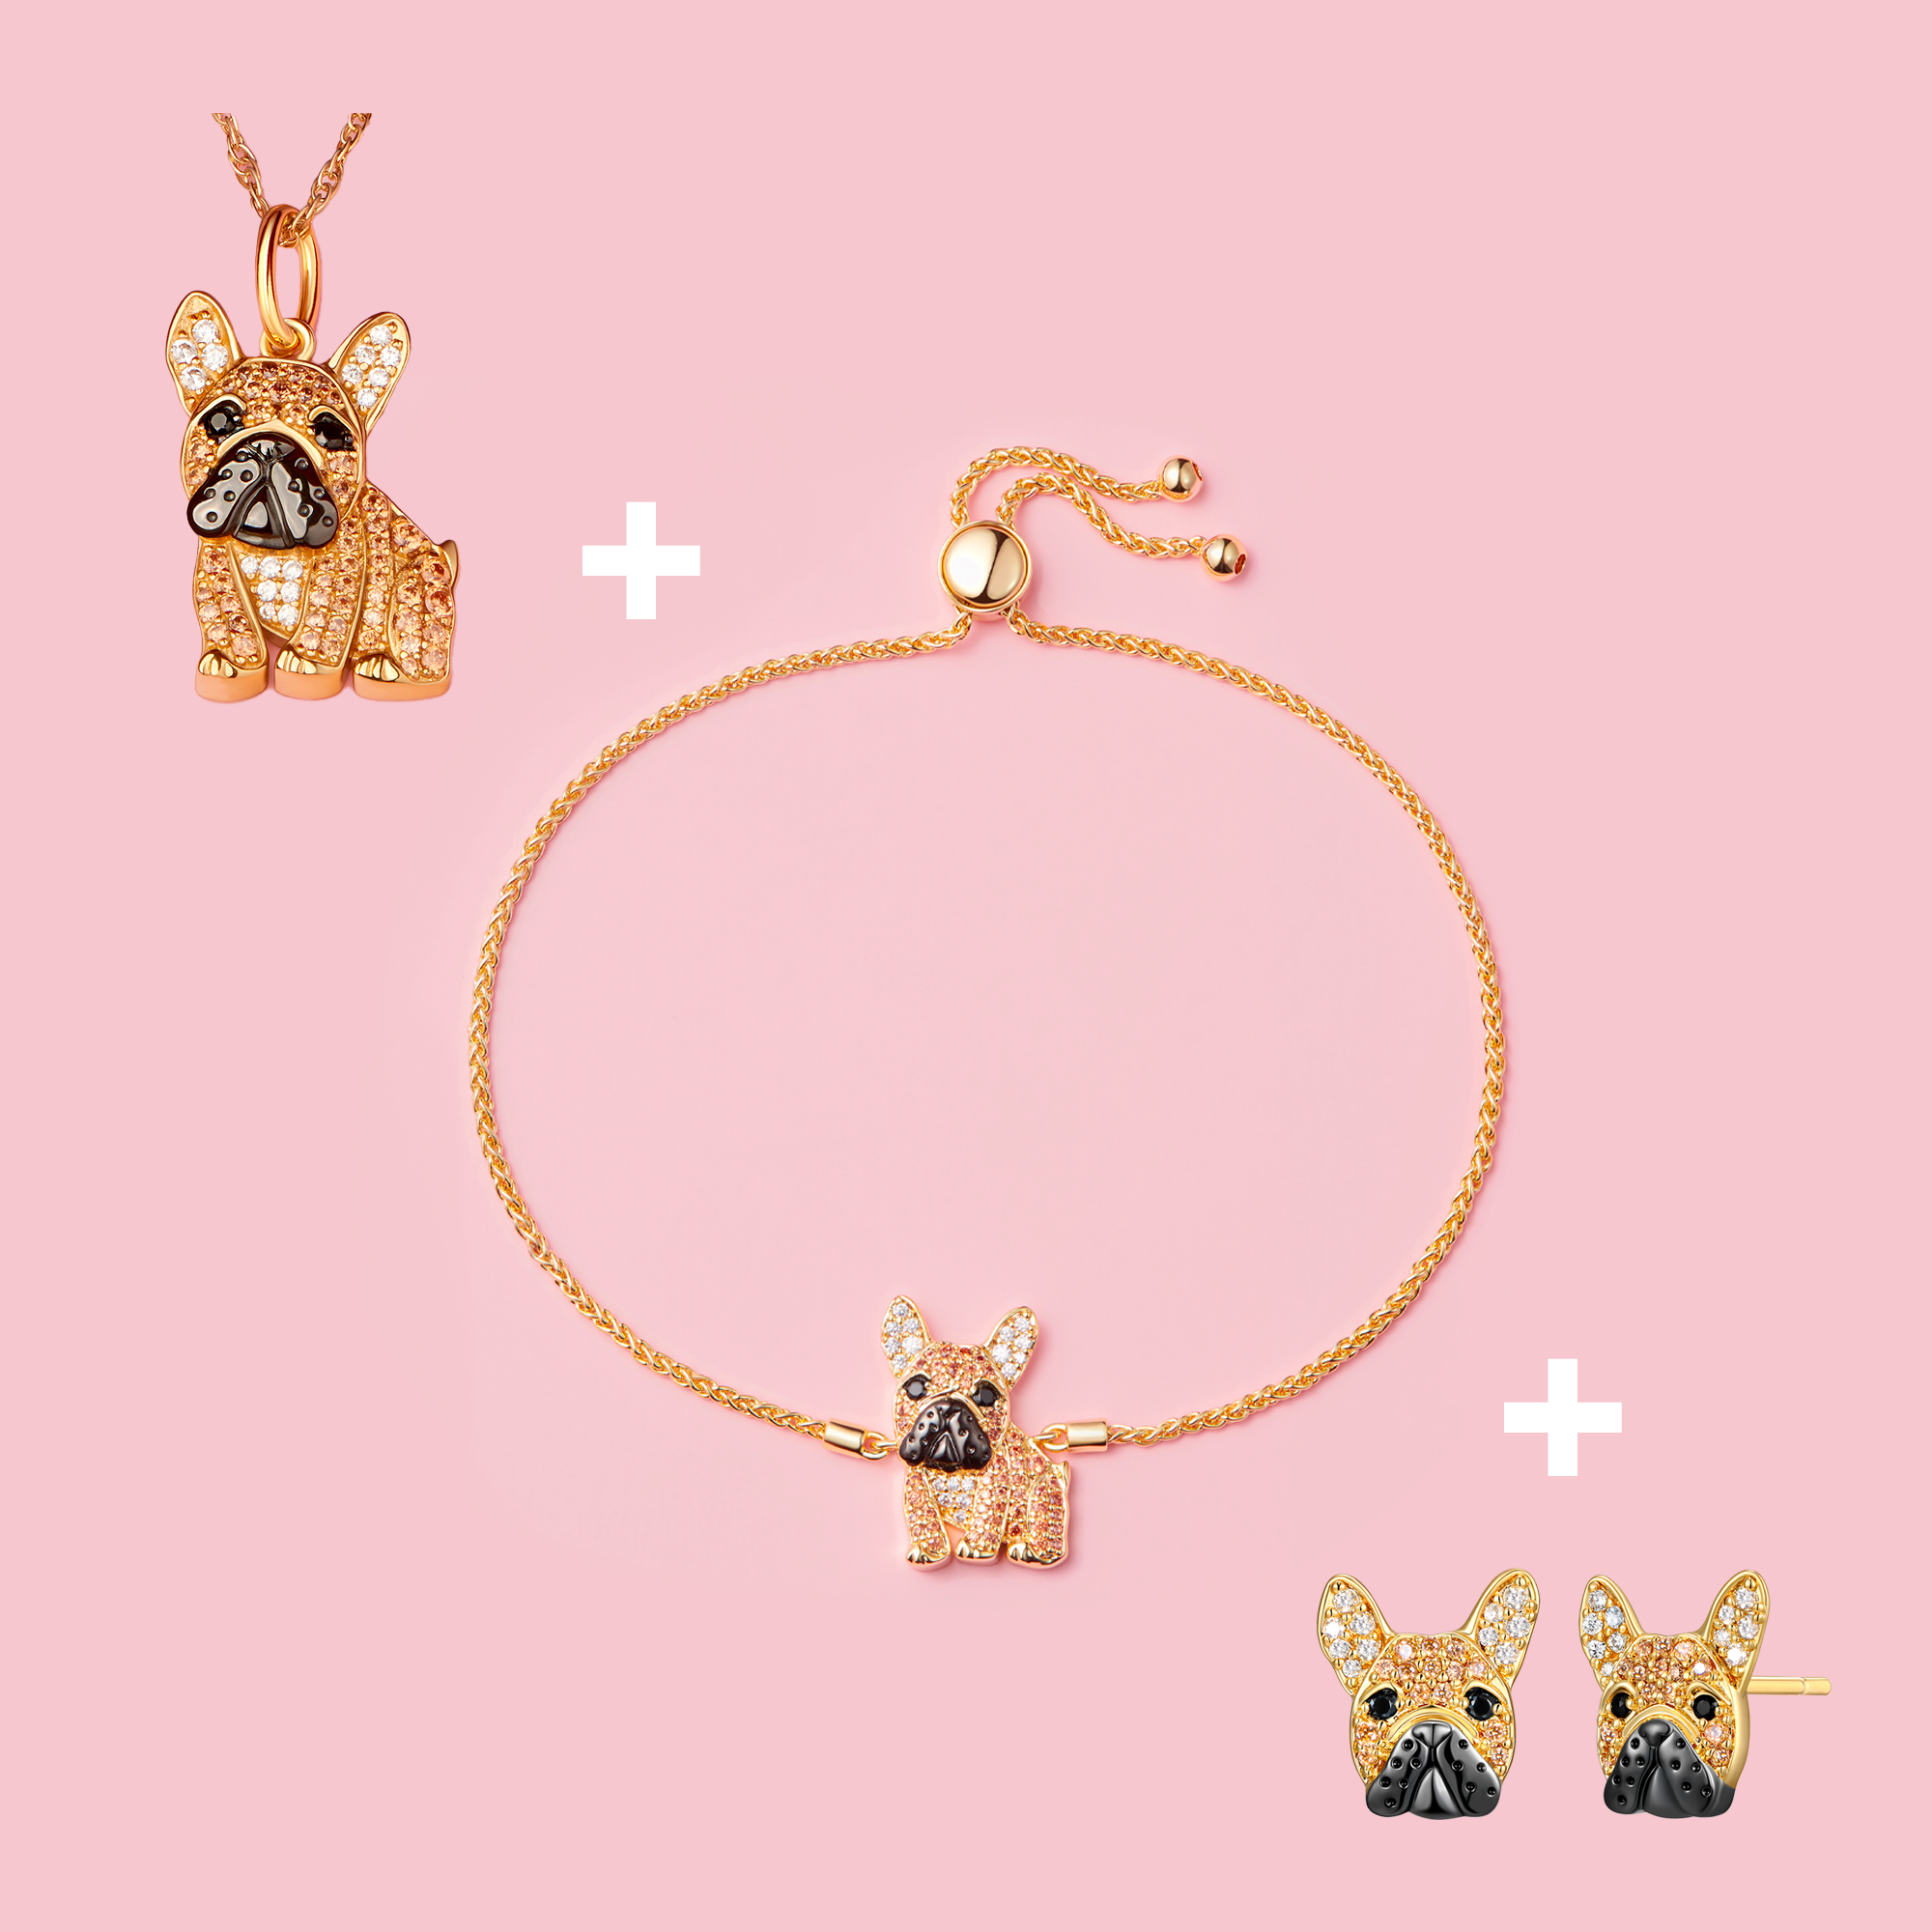 French Bulldog Bundle - Necklace + Bolo Bracelet + Studs